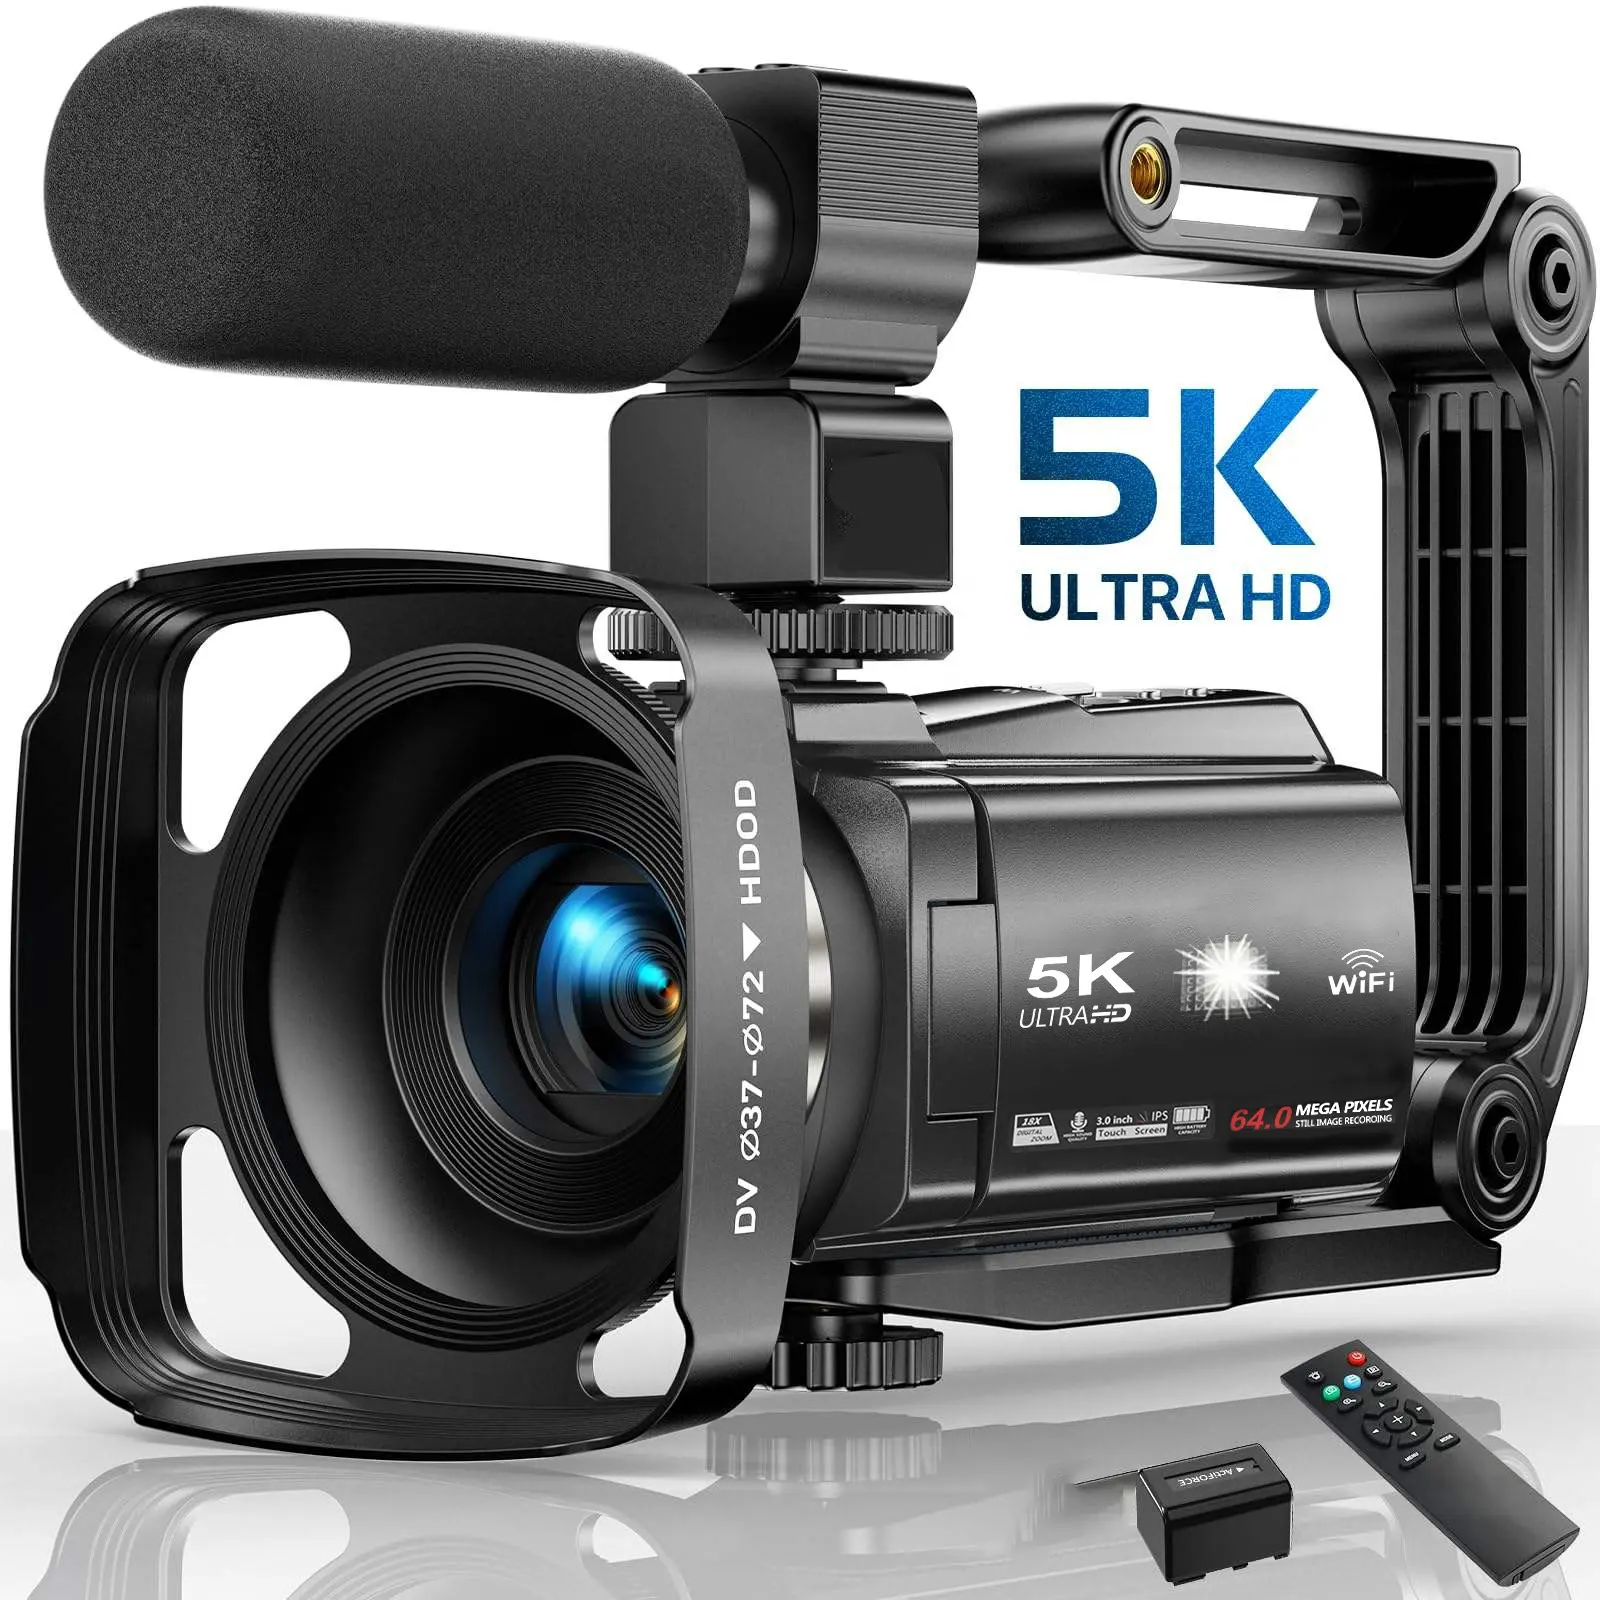 كاميرا تسجيل عالية الدقة احترافية لتسجيل الفيديو بجودة عرض 5k عالية الدقة 3.0 بوصة 48.0 ميجا بكسل كاميرا رقمية ذات عدسة عاكسة رقمية كاميرات فيديو